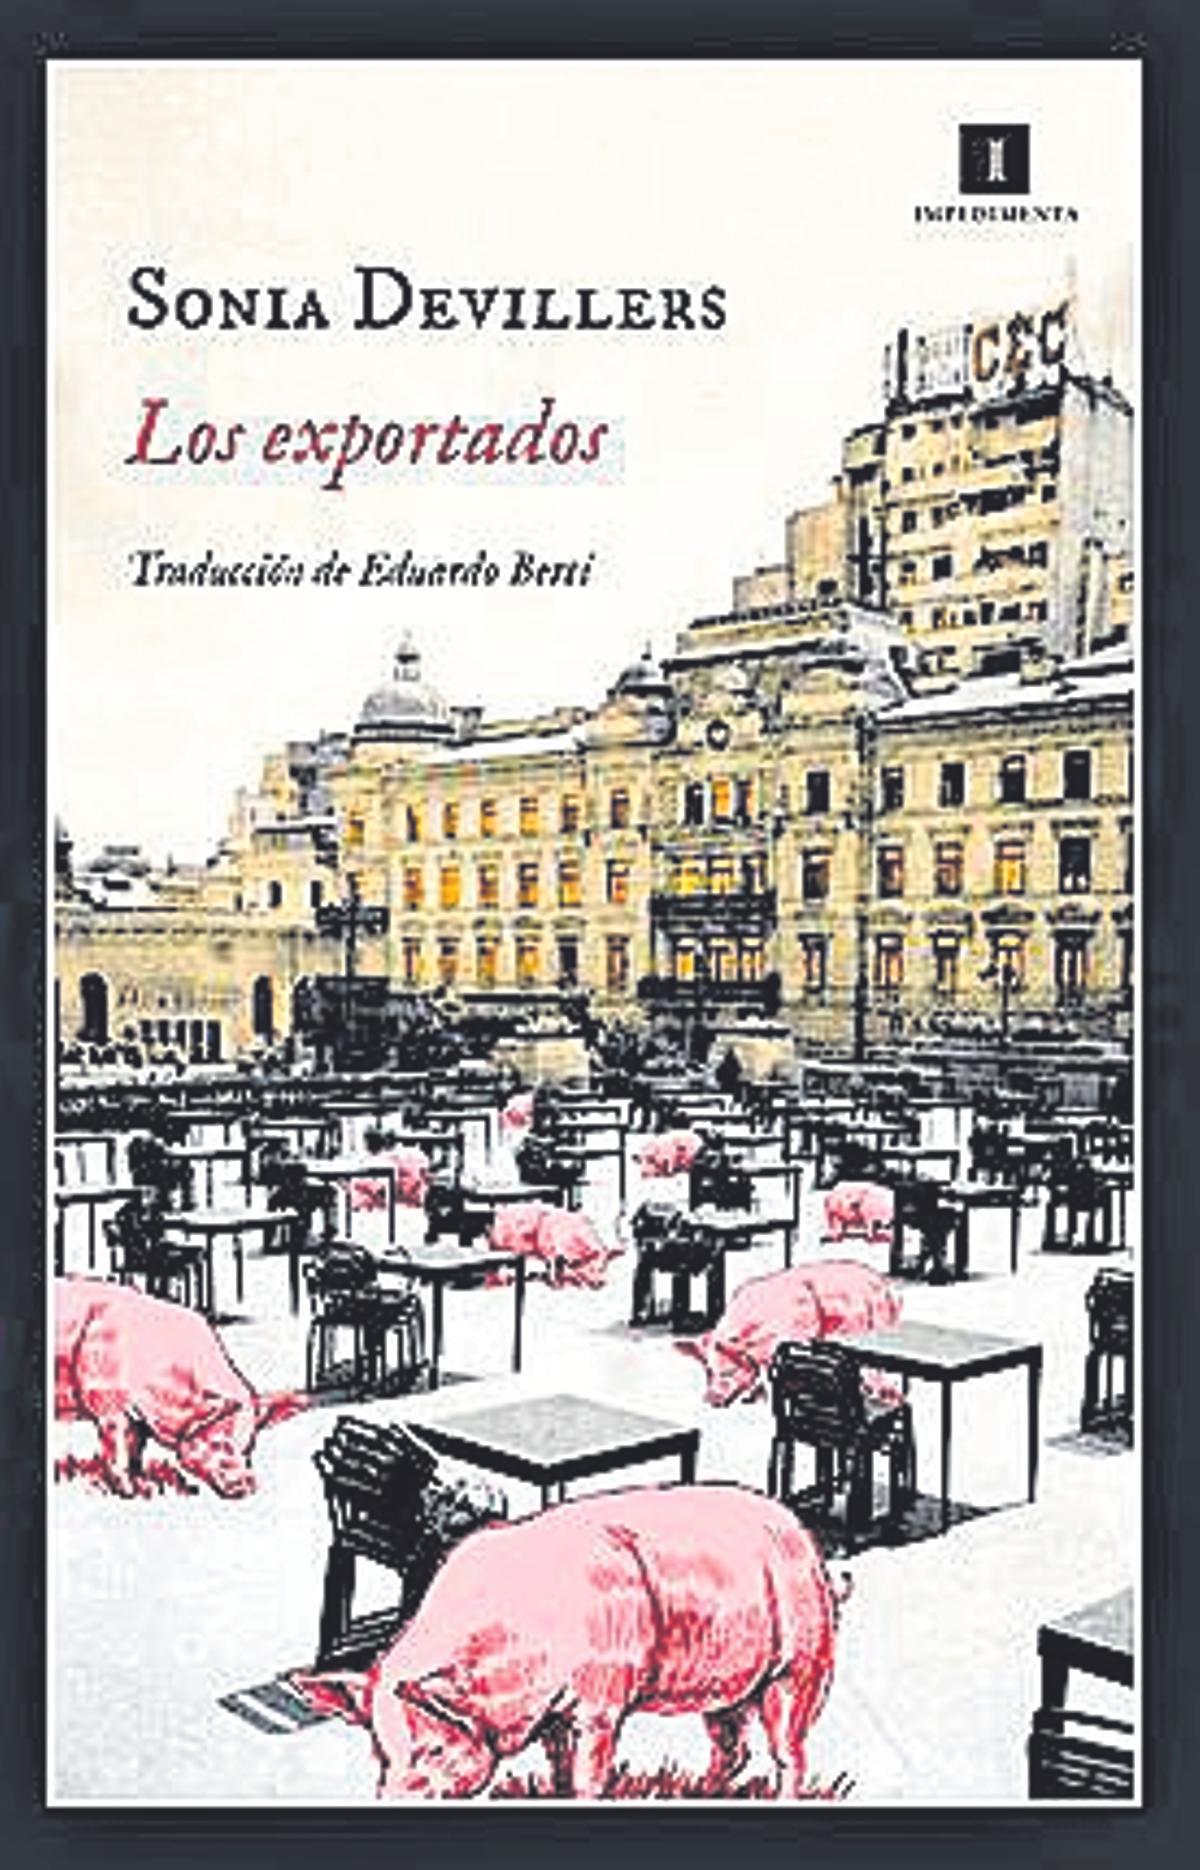 Sonia Devillers  Los exportados  Traducción de Eduardo Berti  Impedimenta  240 páginas / 22,95 euros